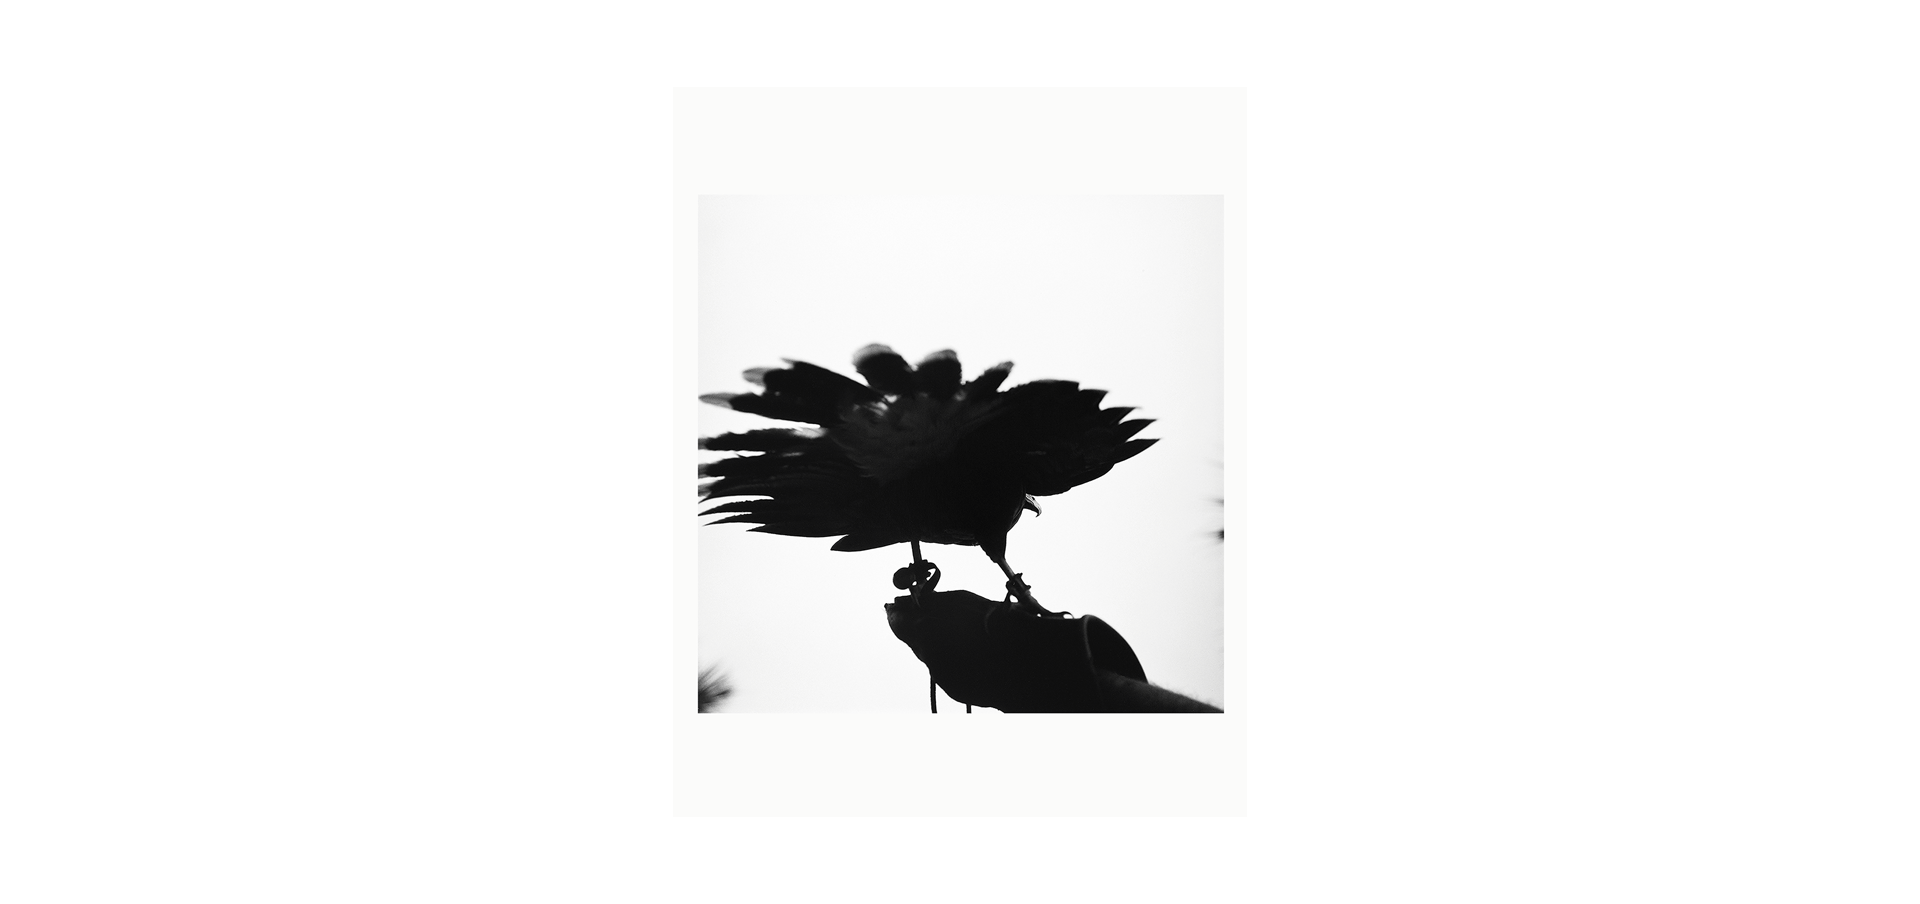 Des oiseaux - Graciela Iturbide - Édition Limitée